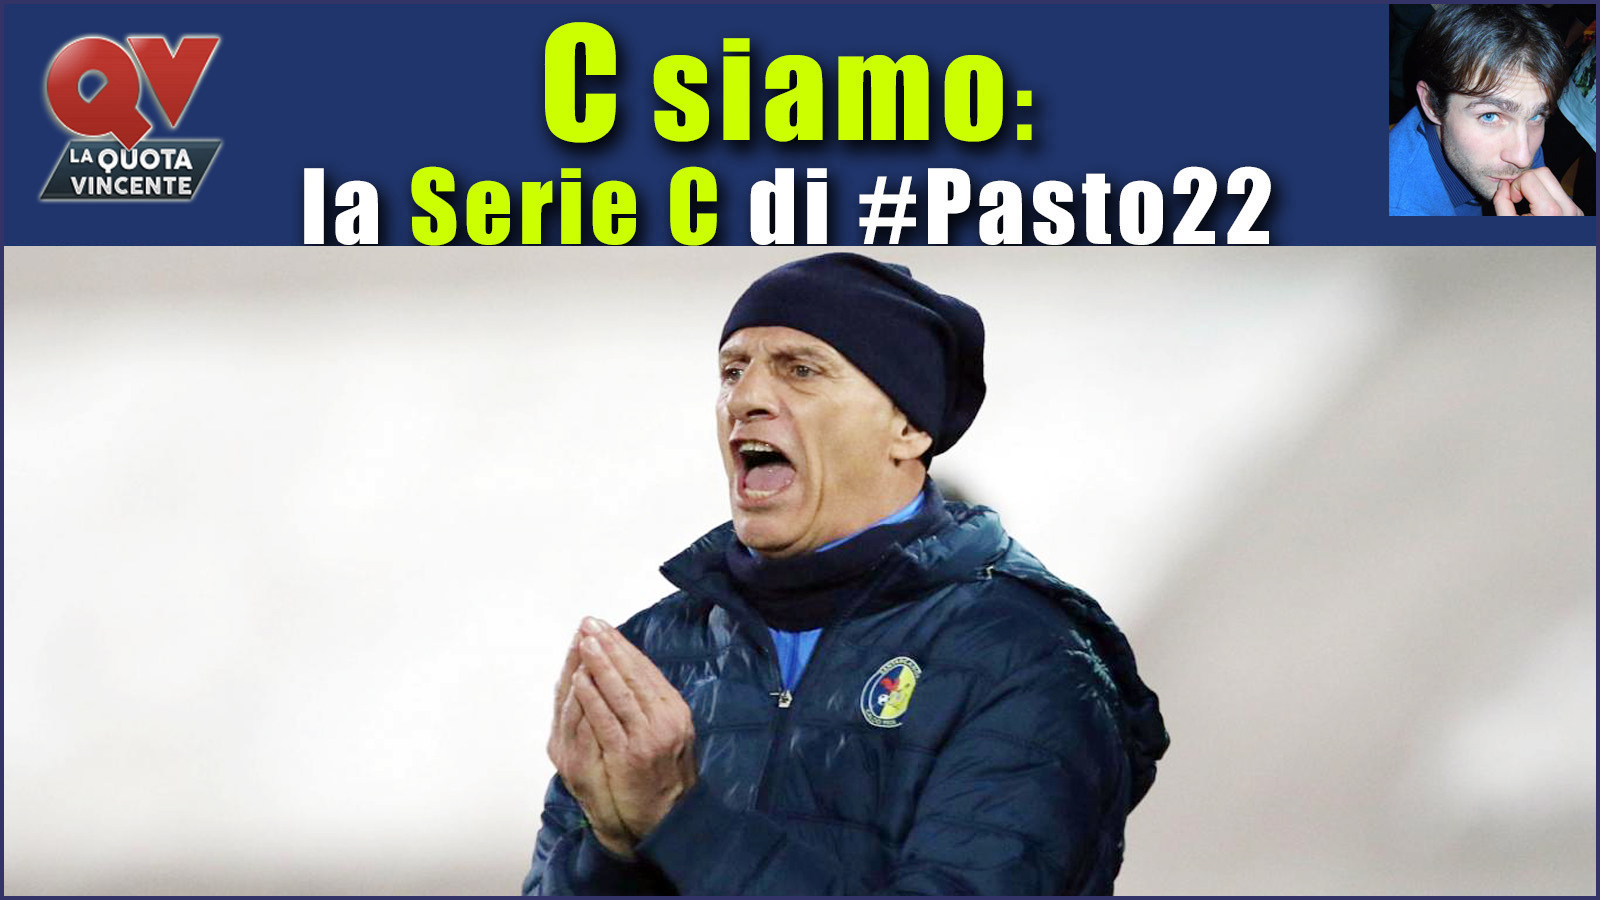 Pronostici Serie C sabato 3 febbraio: #Csiamo, il blog di #Pasto22